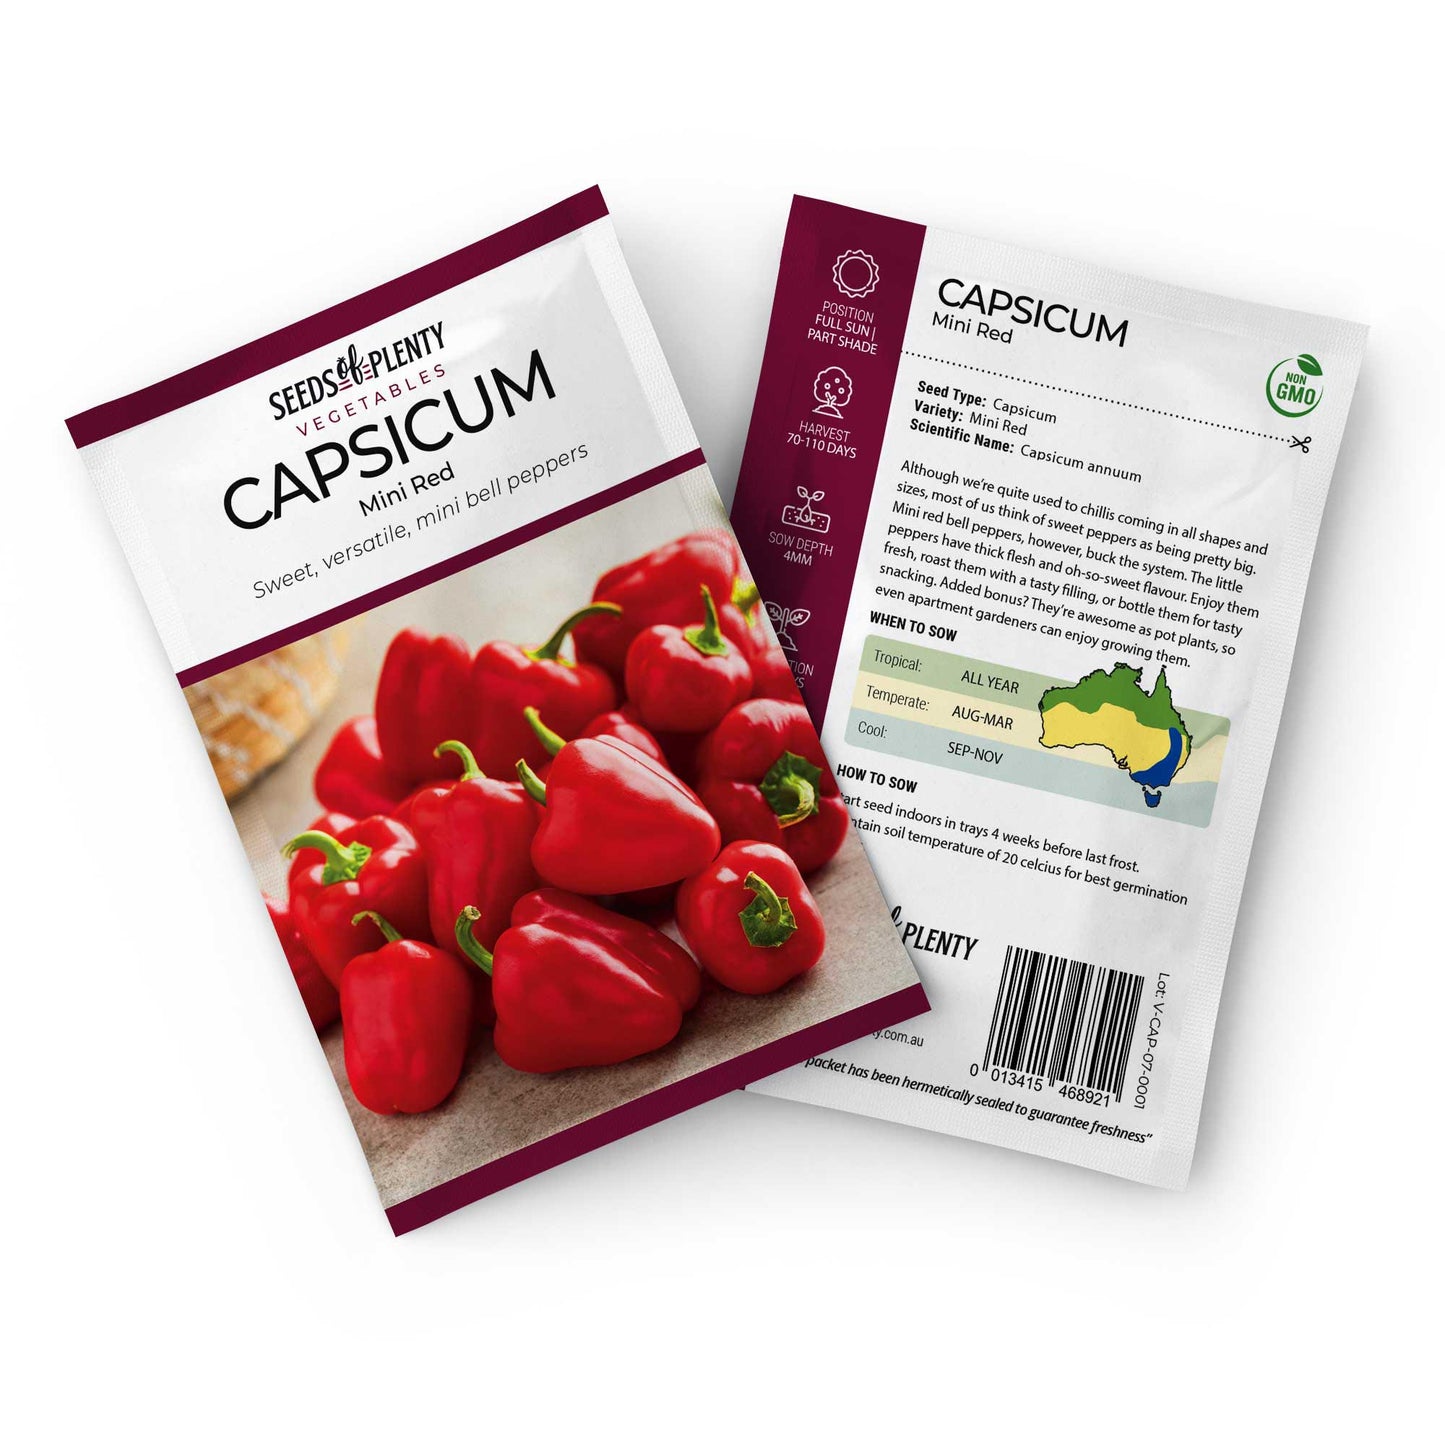 CAPSICUM - Mini Red Default Title